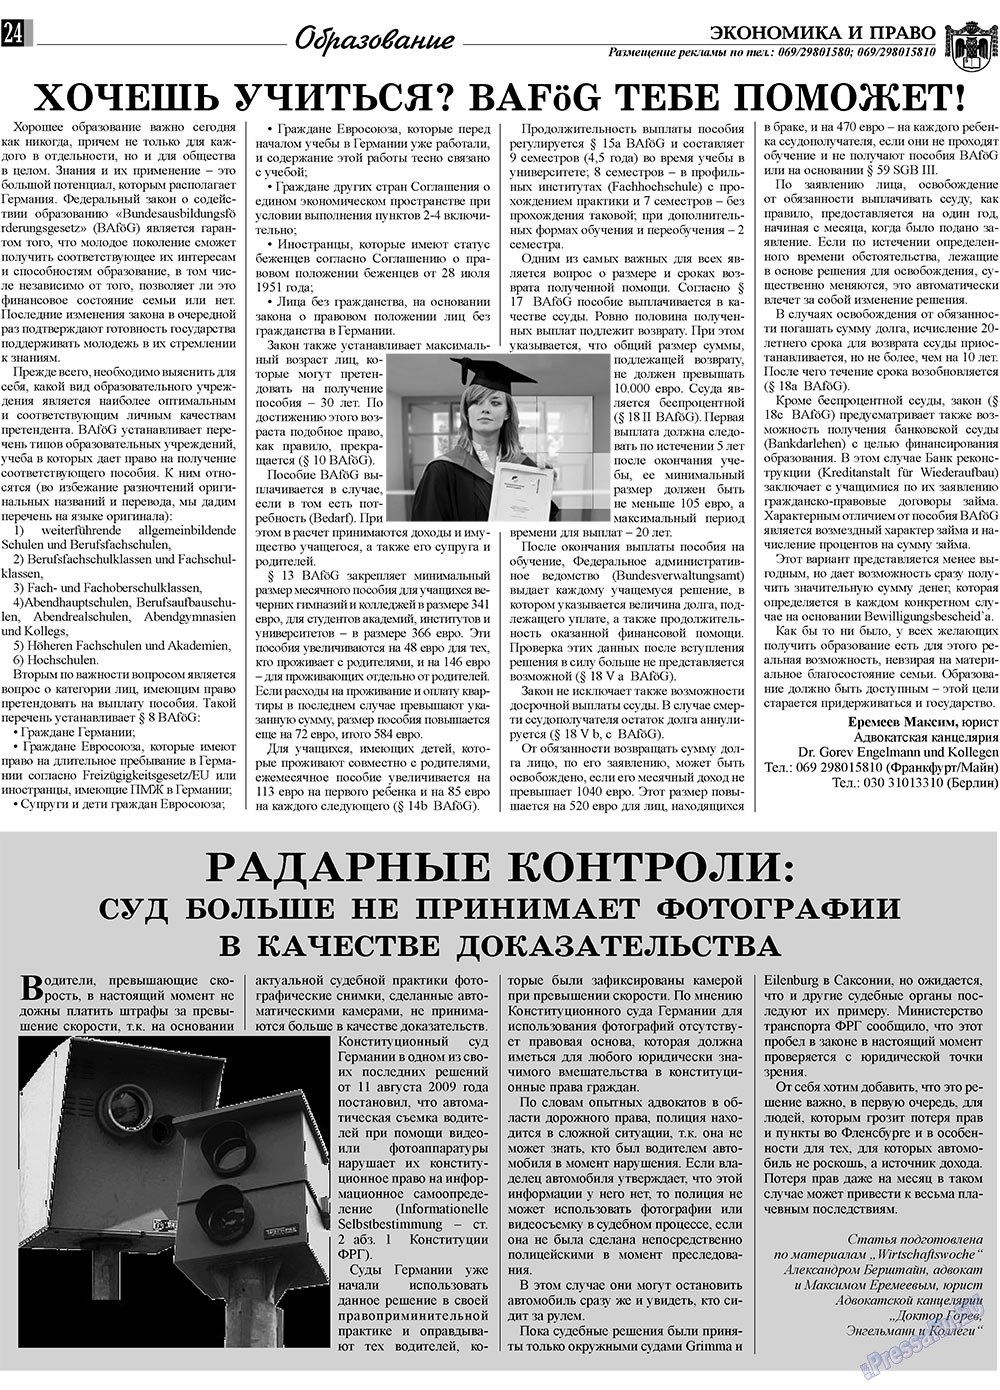 Экономика и право, газета. 2009 №12 стр.24